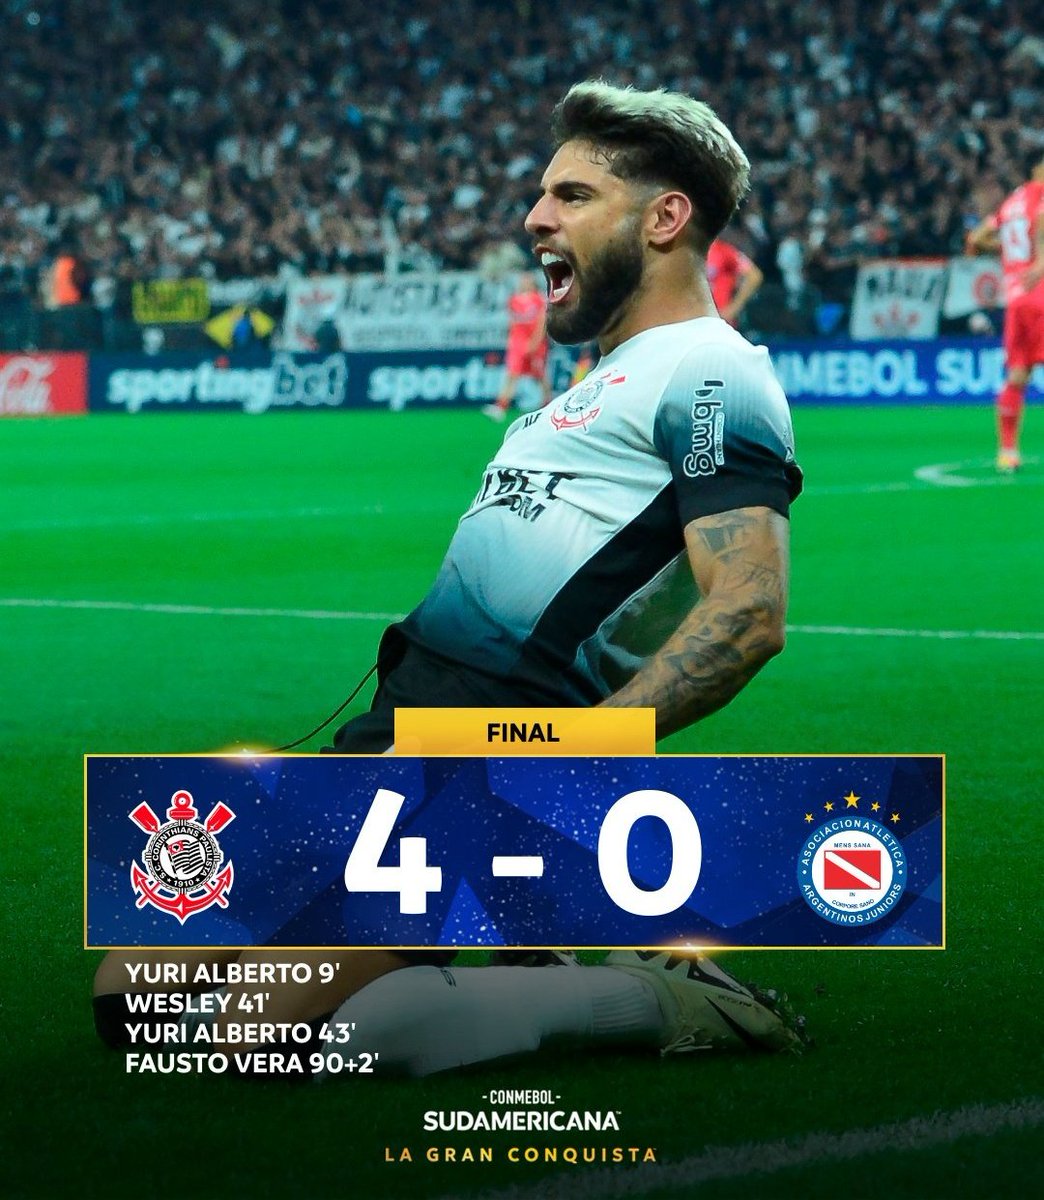 #AAAJ:
Porque Argentinos Juniors perdió ante Corinthians y quedó eliminado de la #CopaSudamericana